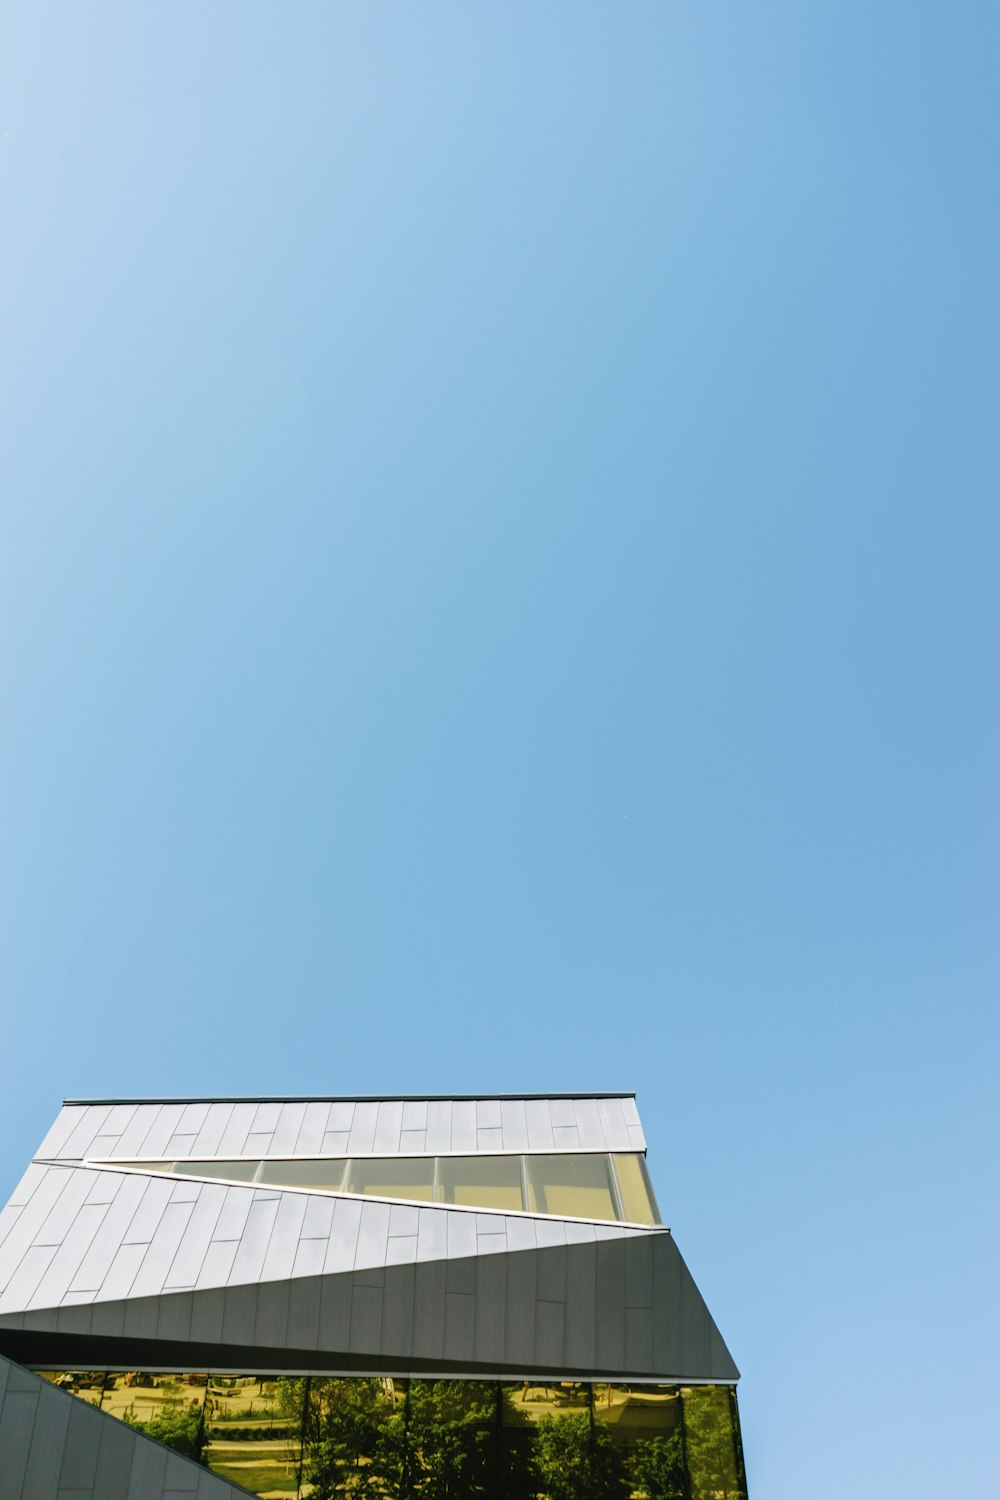 fotografia de baixo ângulo do edifício de concreto branco sob o céu azul claro